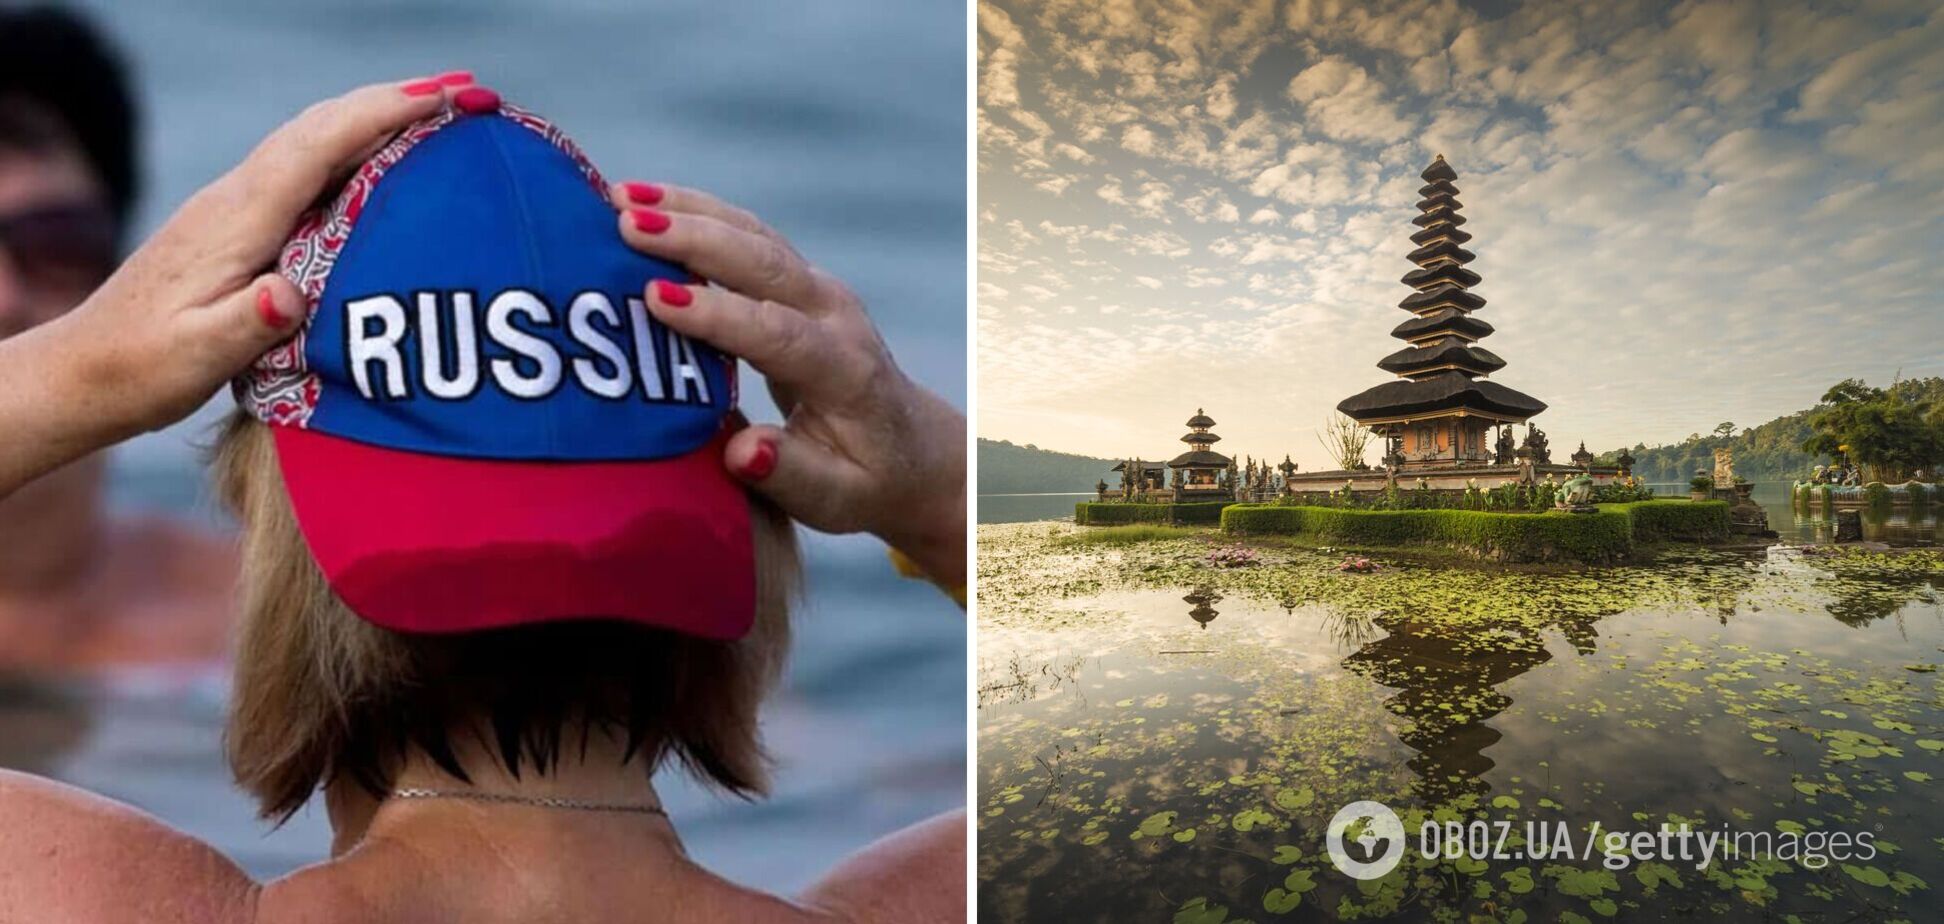 Российских туристов выгнали из храма на Бали за нарушение дресс-кода: они пришли в 'белье и бикини' и устроили истерику